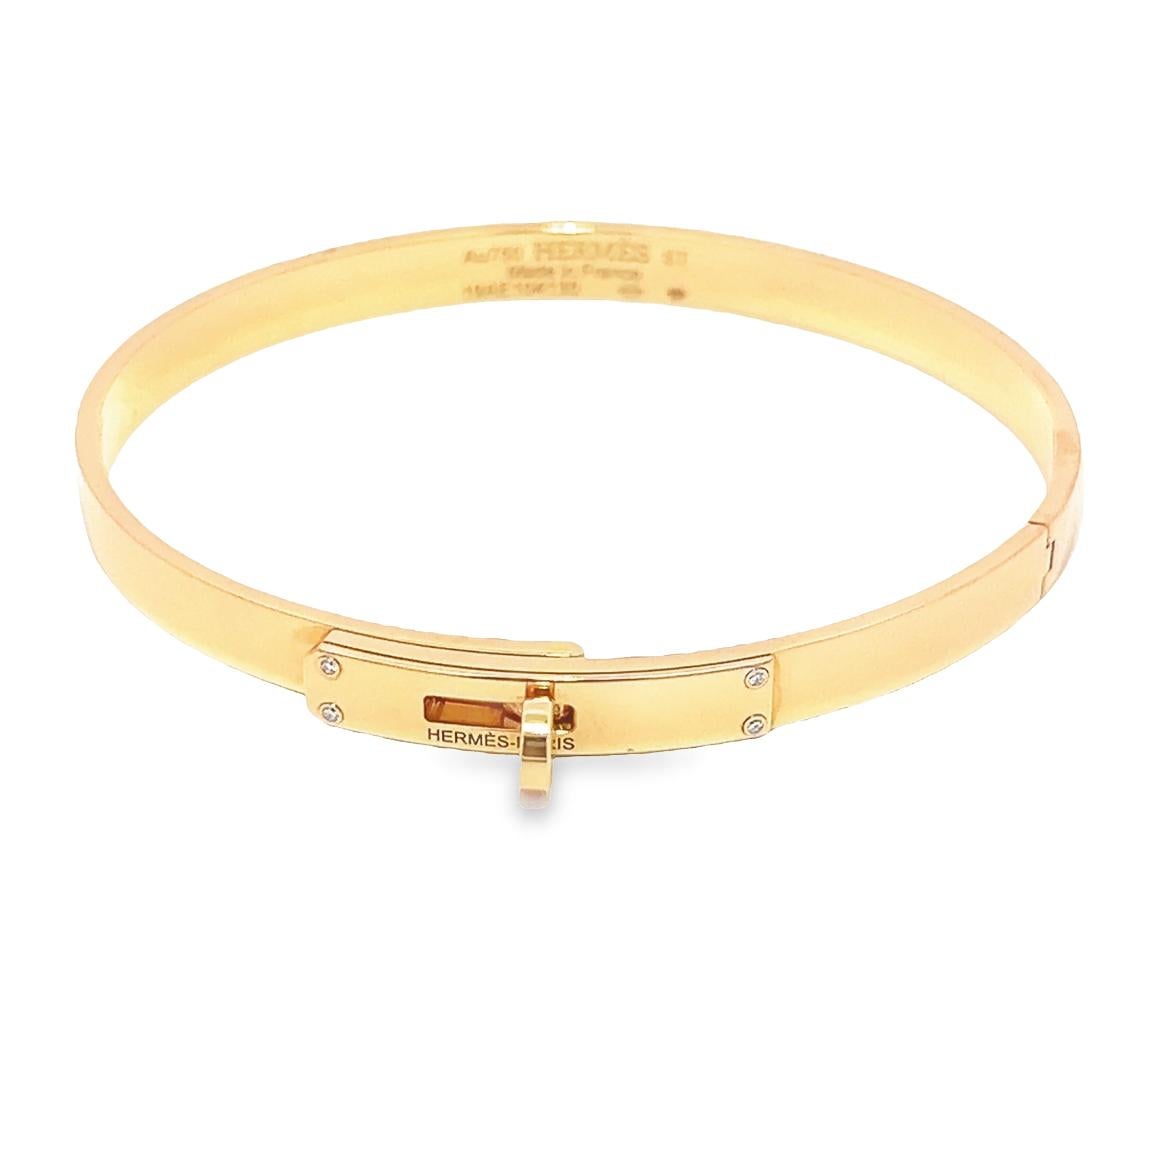 Aesthetic Movement Kelly bracelet, 18K Rose Gold, small model